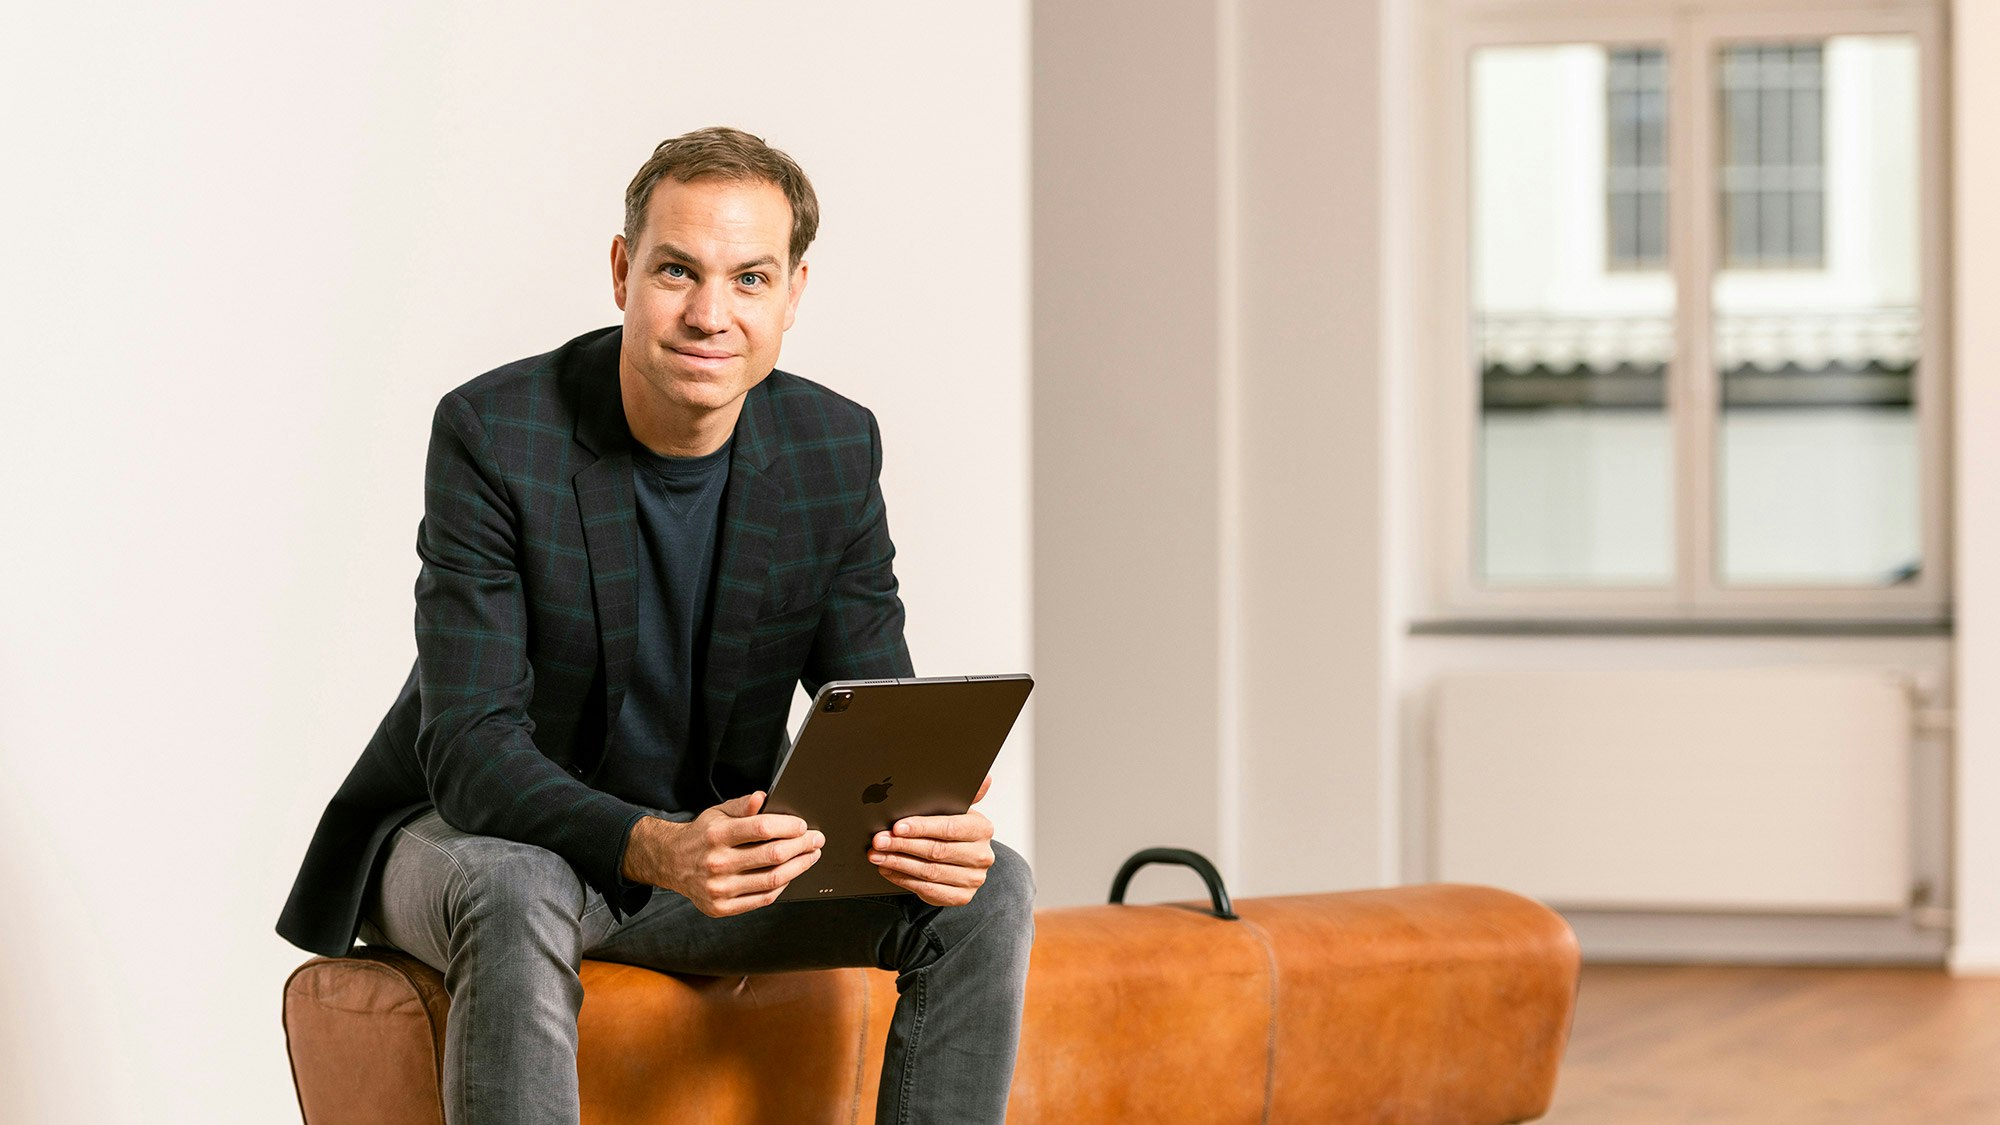 Profilbild von Tobias Felbecker, der auf einer orangefarbenen Bank sitzt und ein iPad hält.